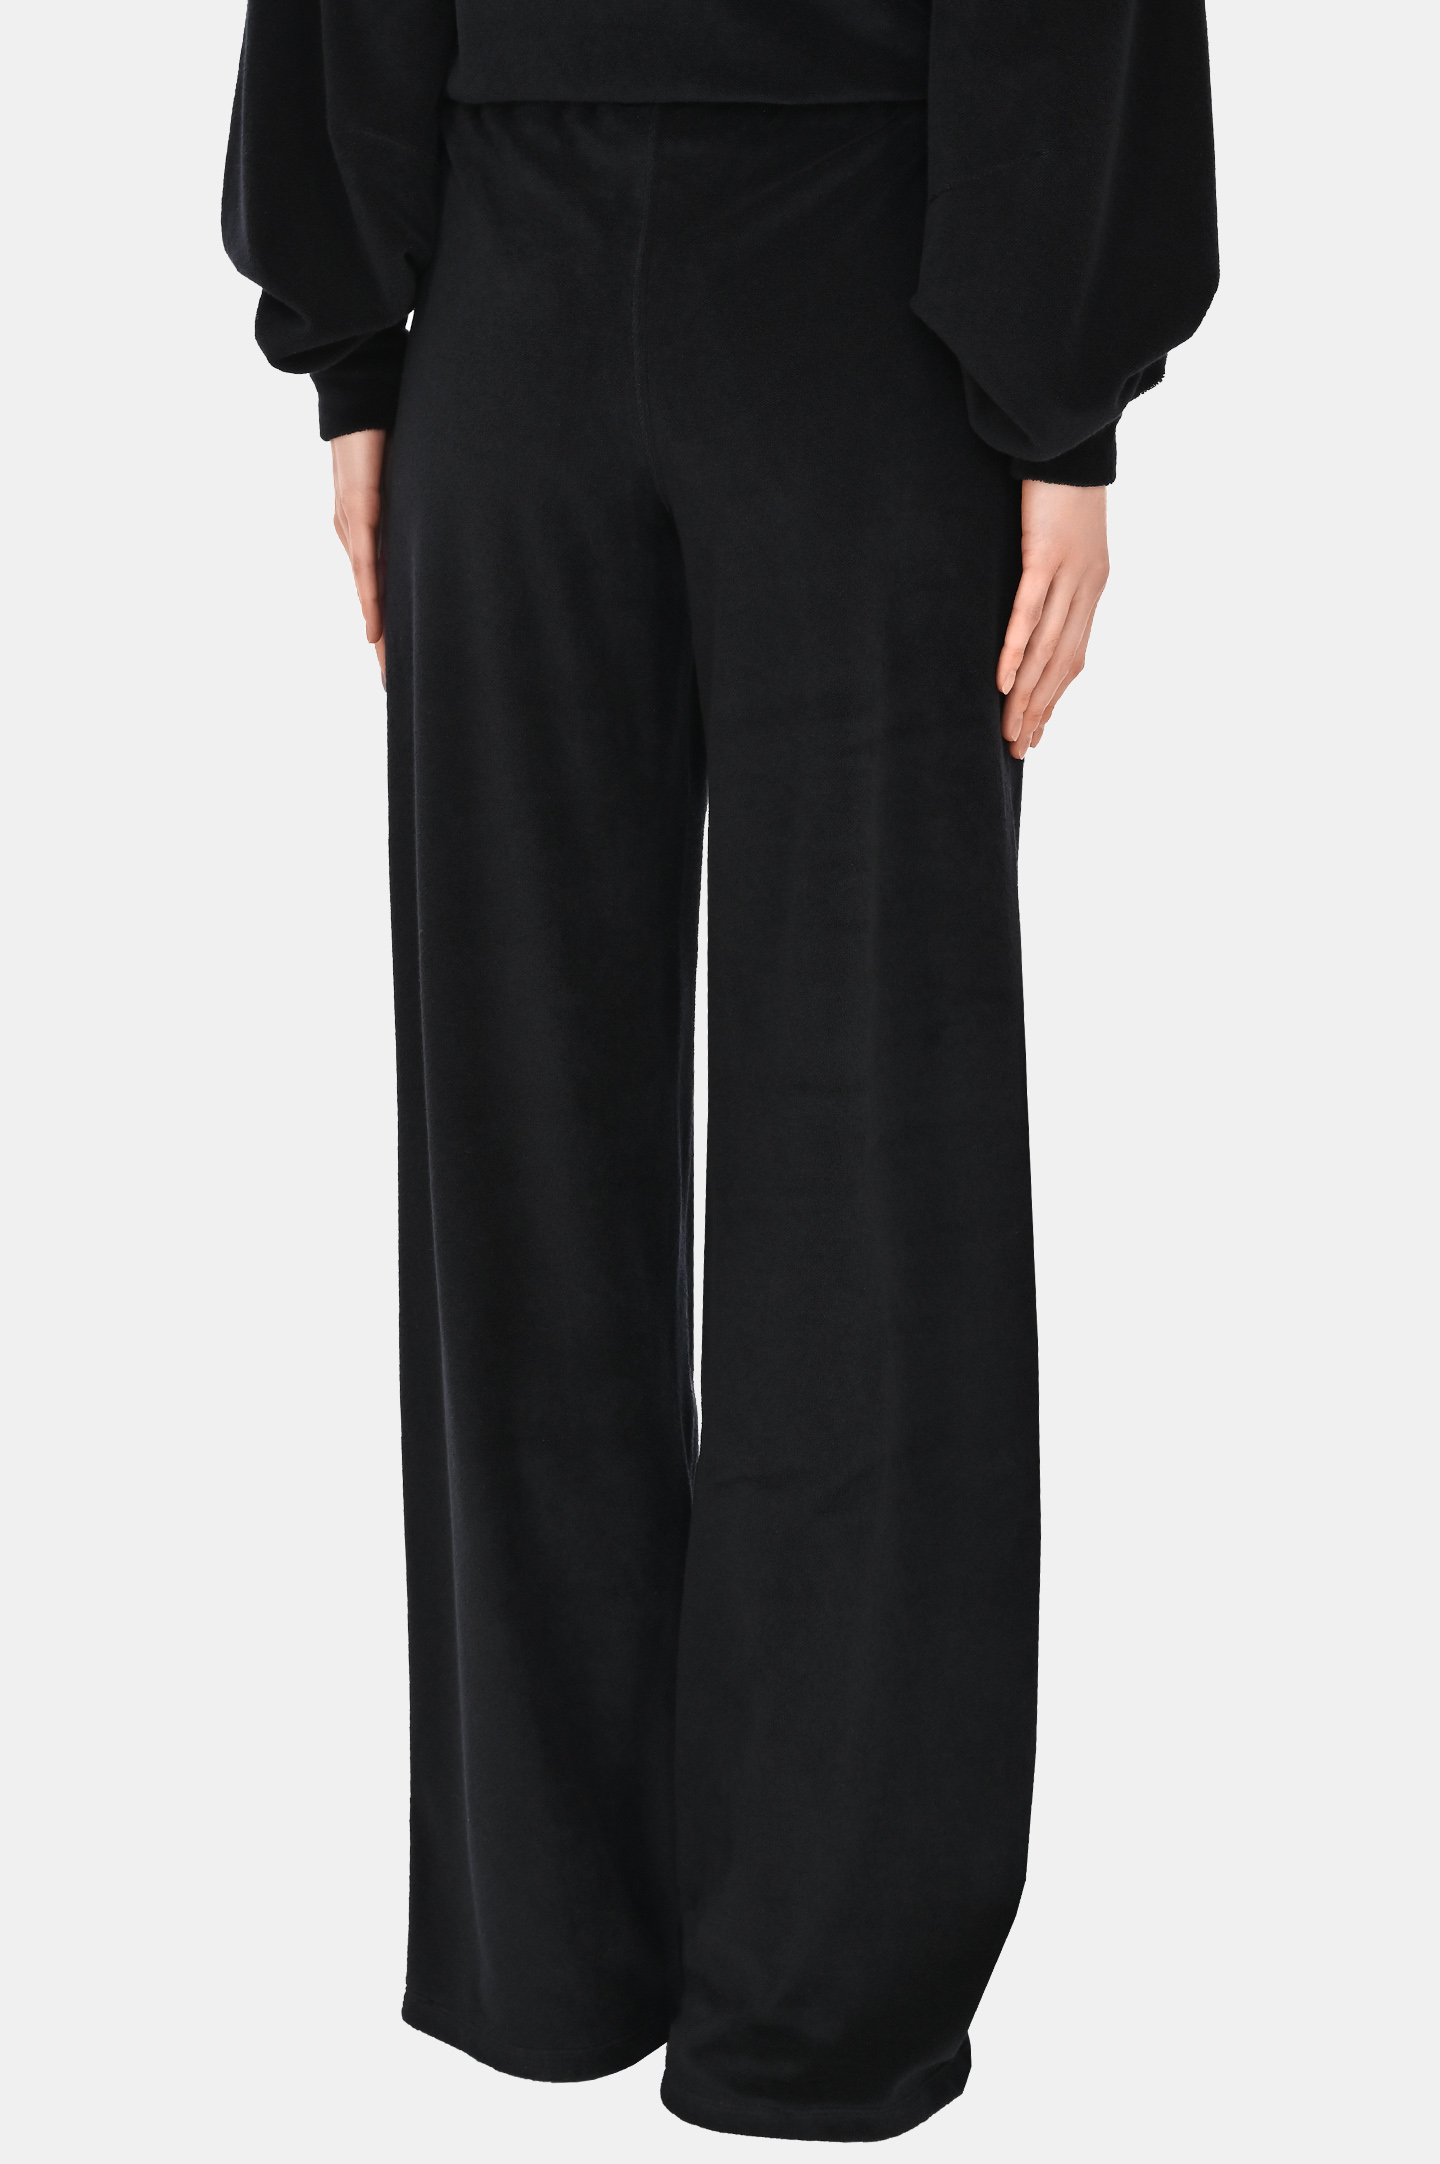 Спортивные широкие брюки JACOB LEE WJP9625, цвет: Черный, Женский